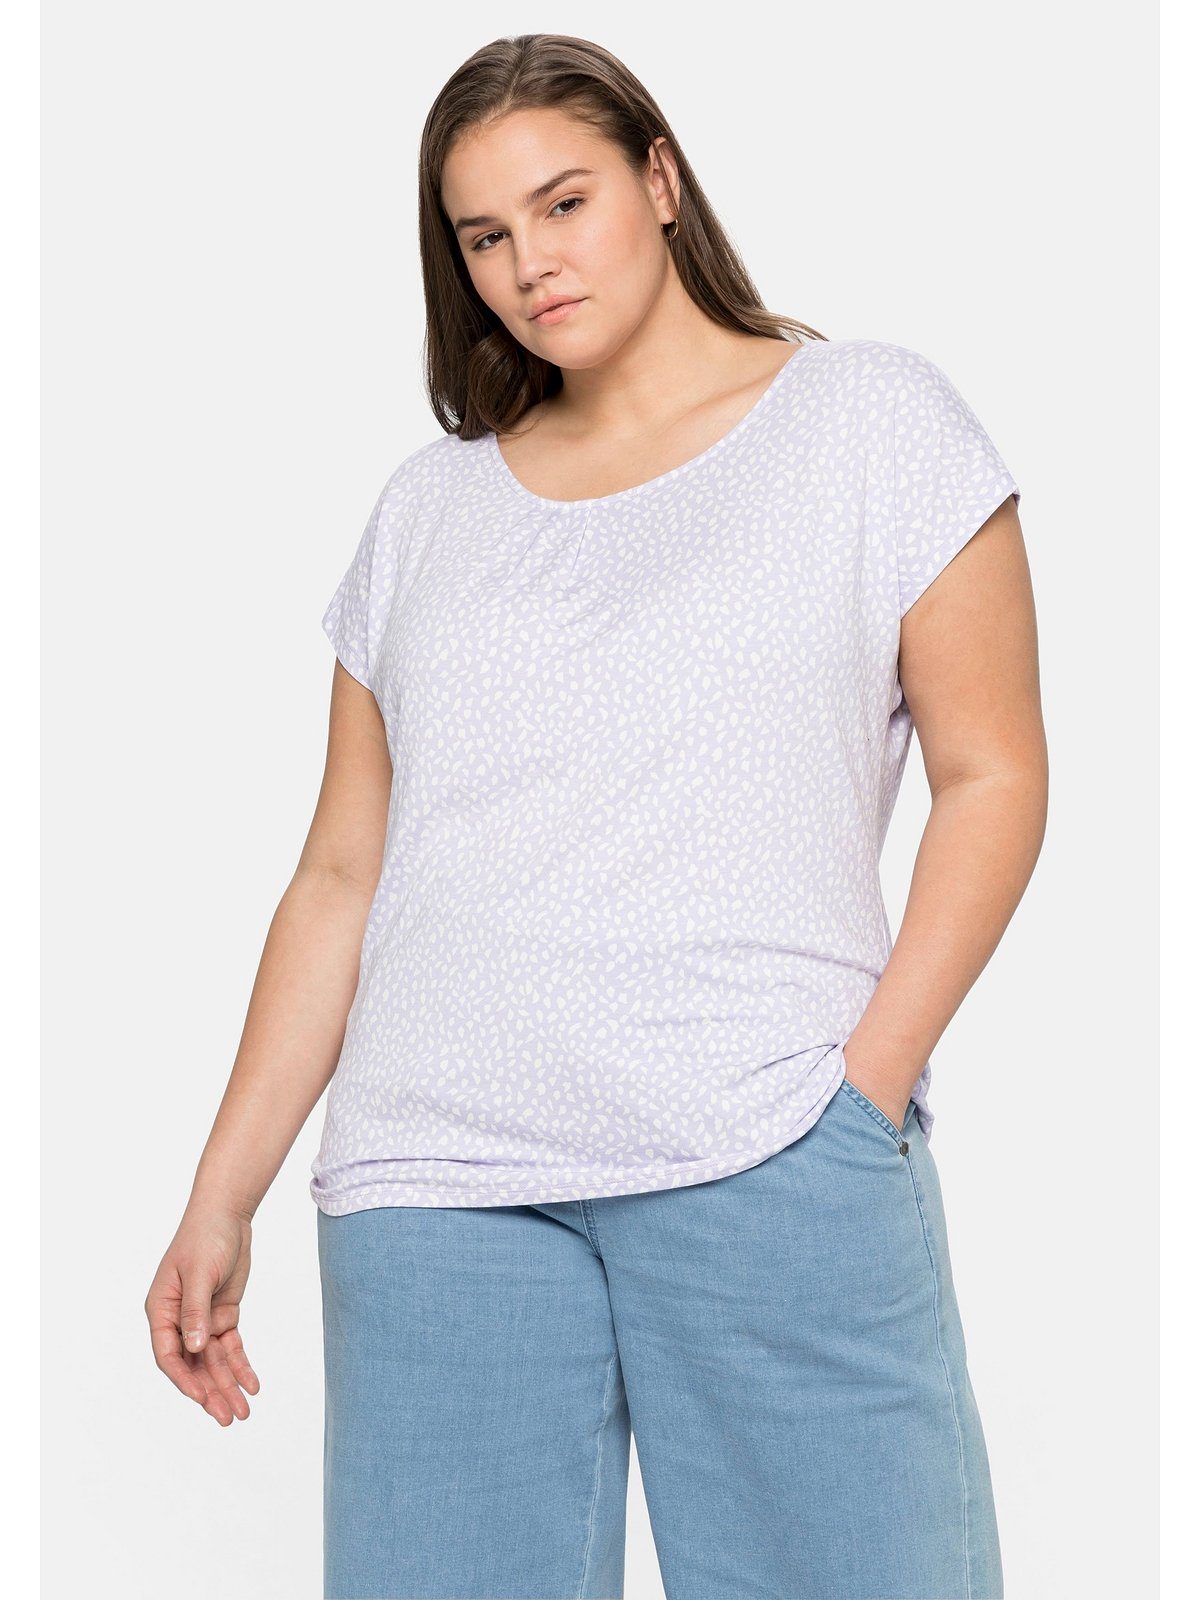 Sheego T-Shirt Große Größen Falten und mit gelegten lavendel Alloverdruck